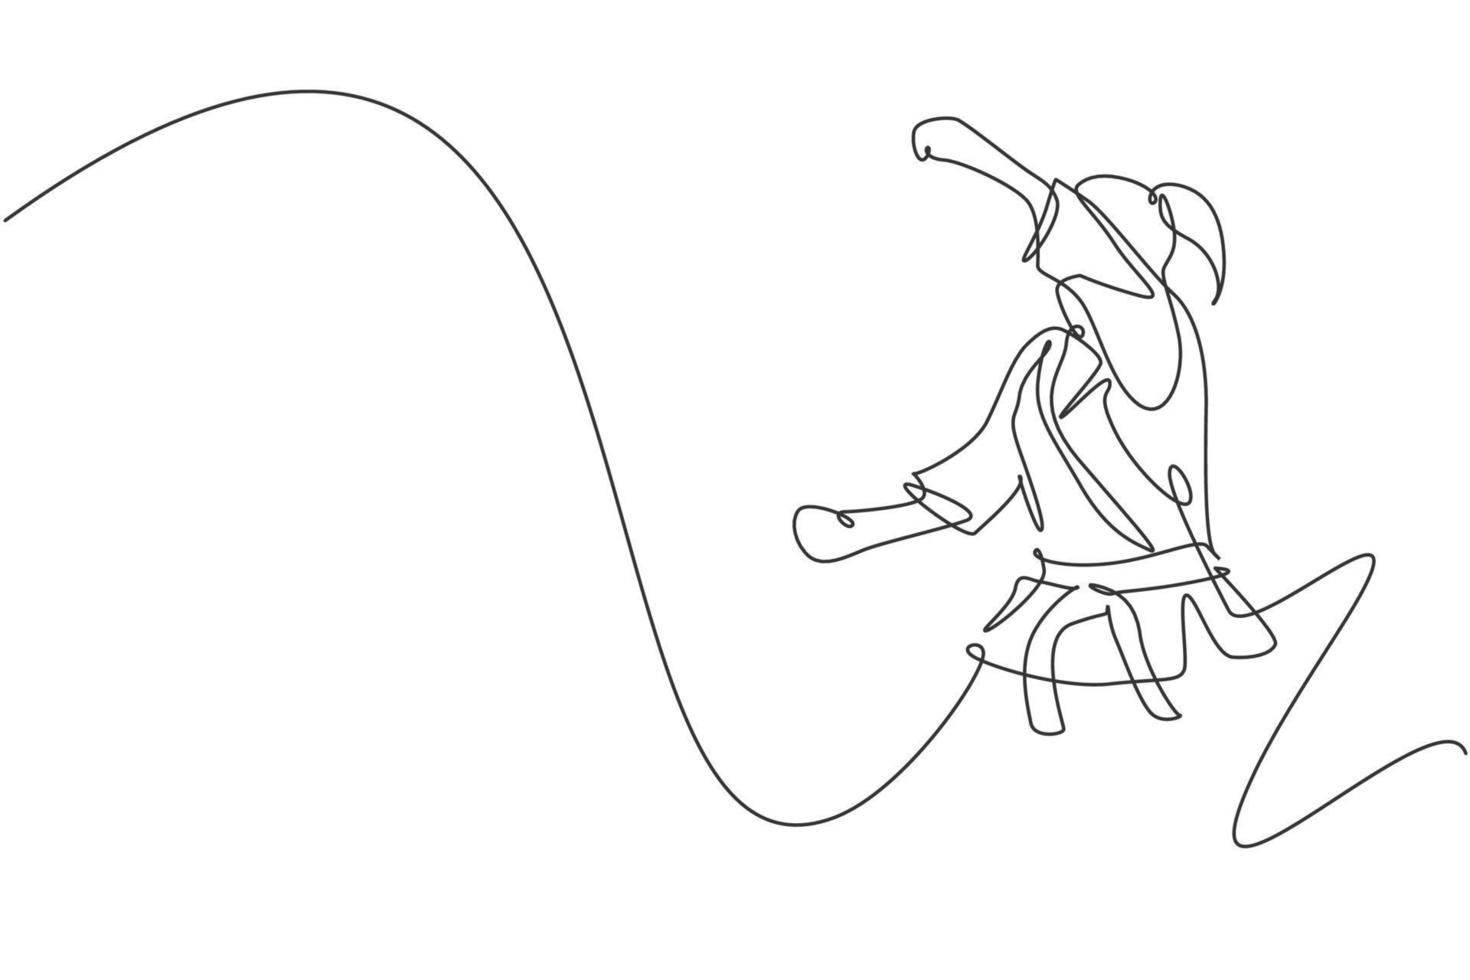 en kontinuerlig linjeteckning av en ung begåvad karateka-tjej som tåget poserar för duellstrider på dojogym. bemästra kampsportkonceptet. dynamisk enda rad rita design vektorillustration vektor